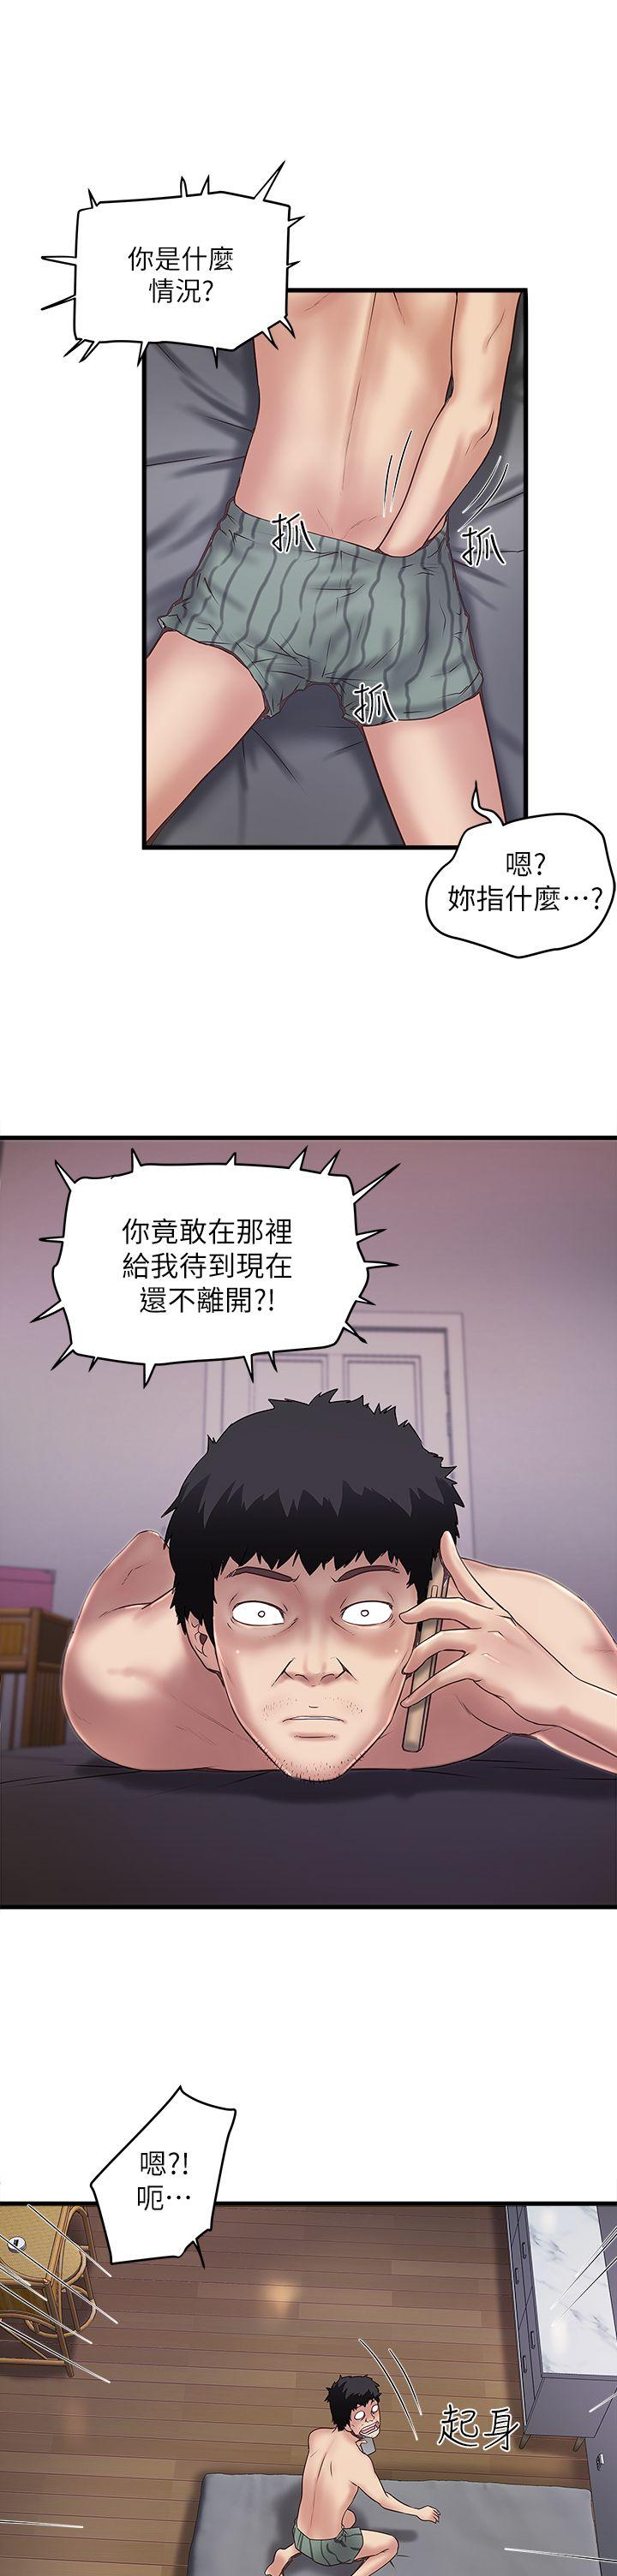 韩国污漫画 下女,初希 第14话-家中传来的淫叫声 22